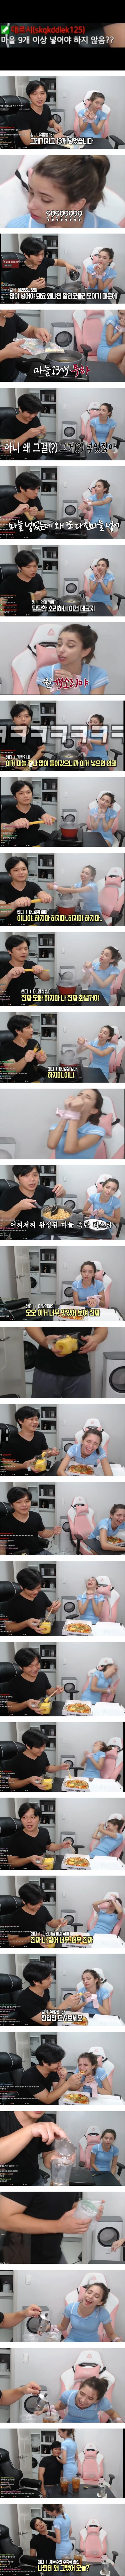 이탈리아 여성을 묶은채로 고문하는 한국남성.png.jpg